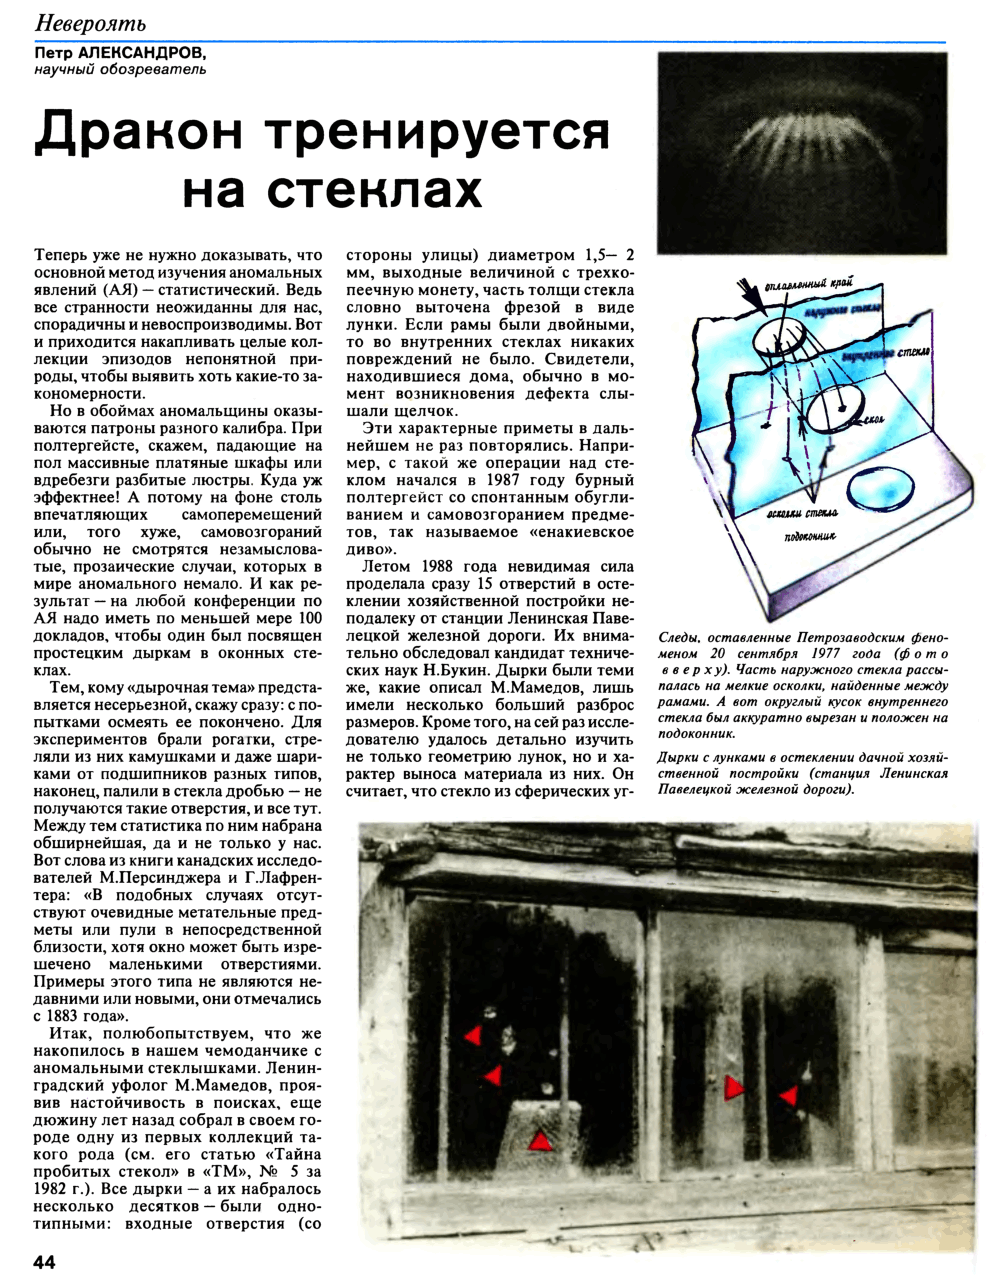 Дракон тренируется на стеклах. П. Александров. Техника — Молодёжи, 1993, №4, с.44-45. Фотокопия №1